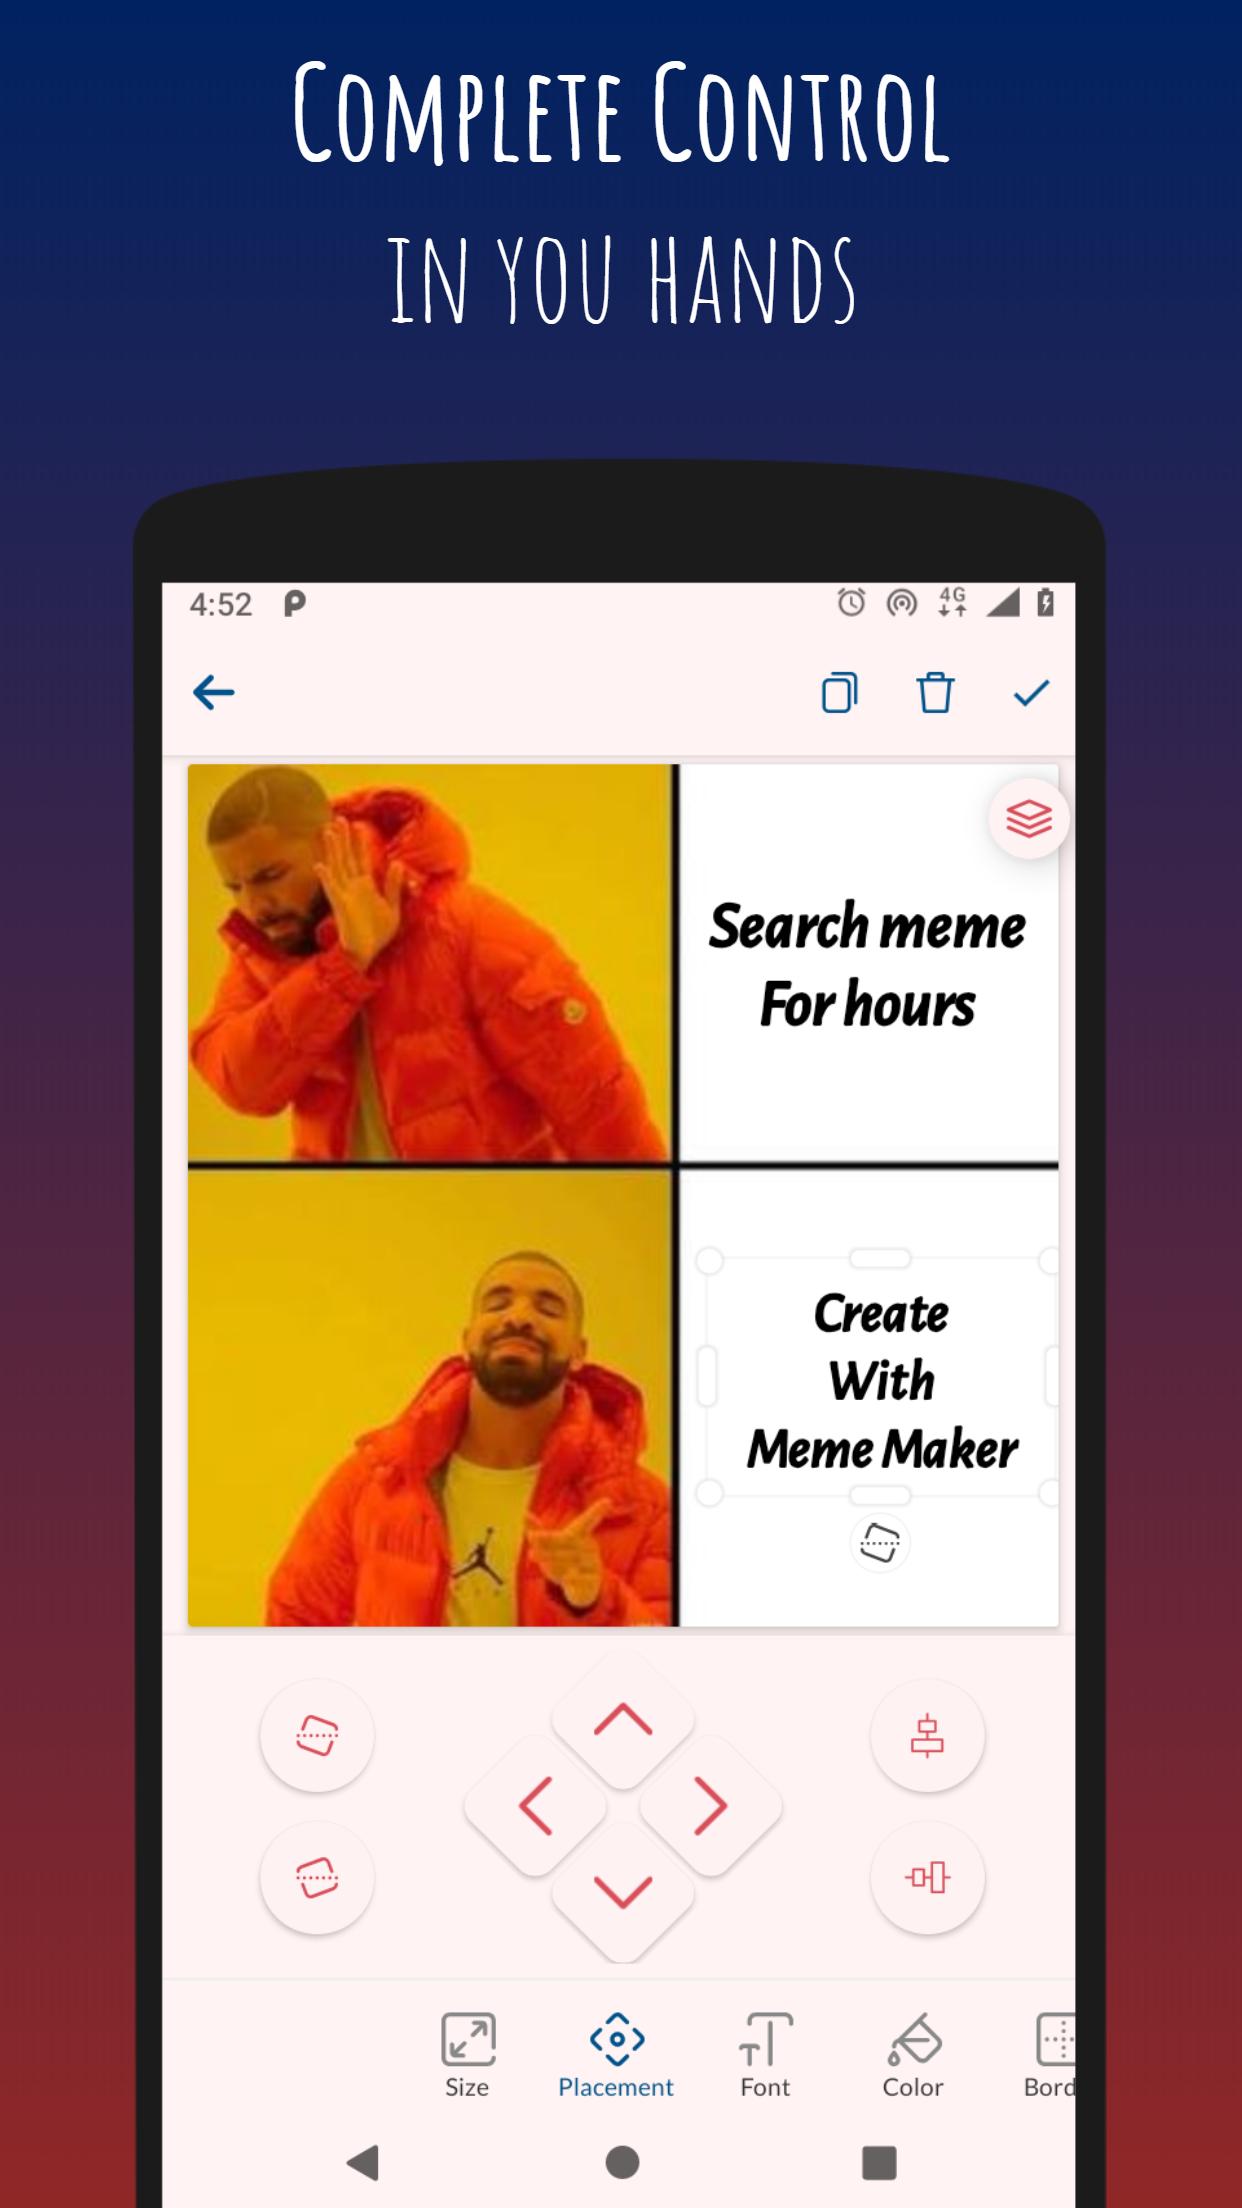 Meme Maker APK for Android Download